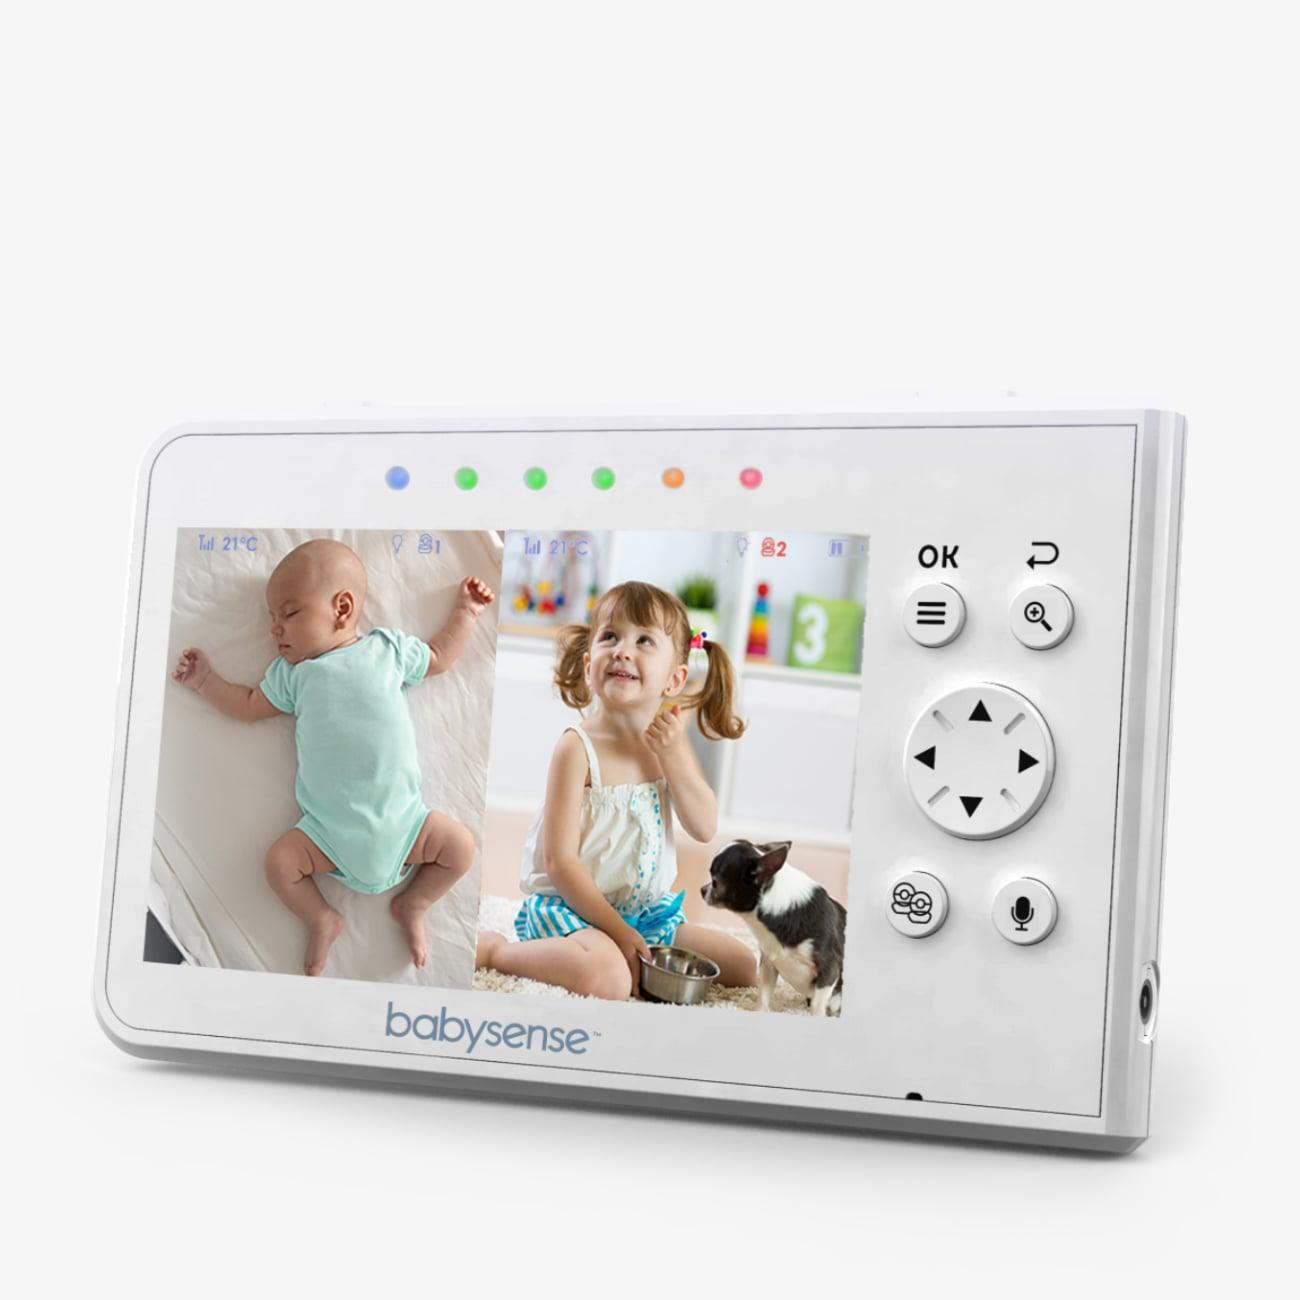 Elterneinheit für Split-Screen-Video-Babyphone V43